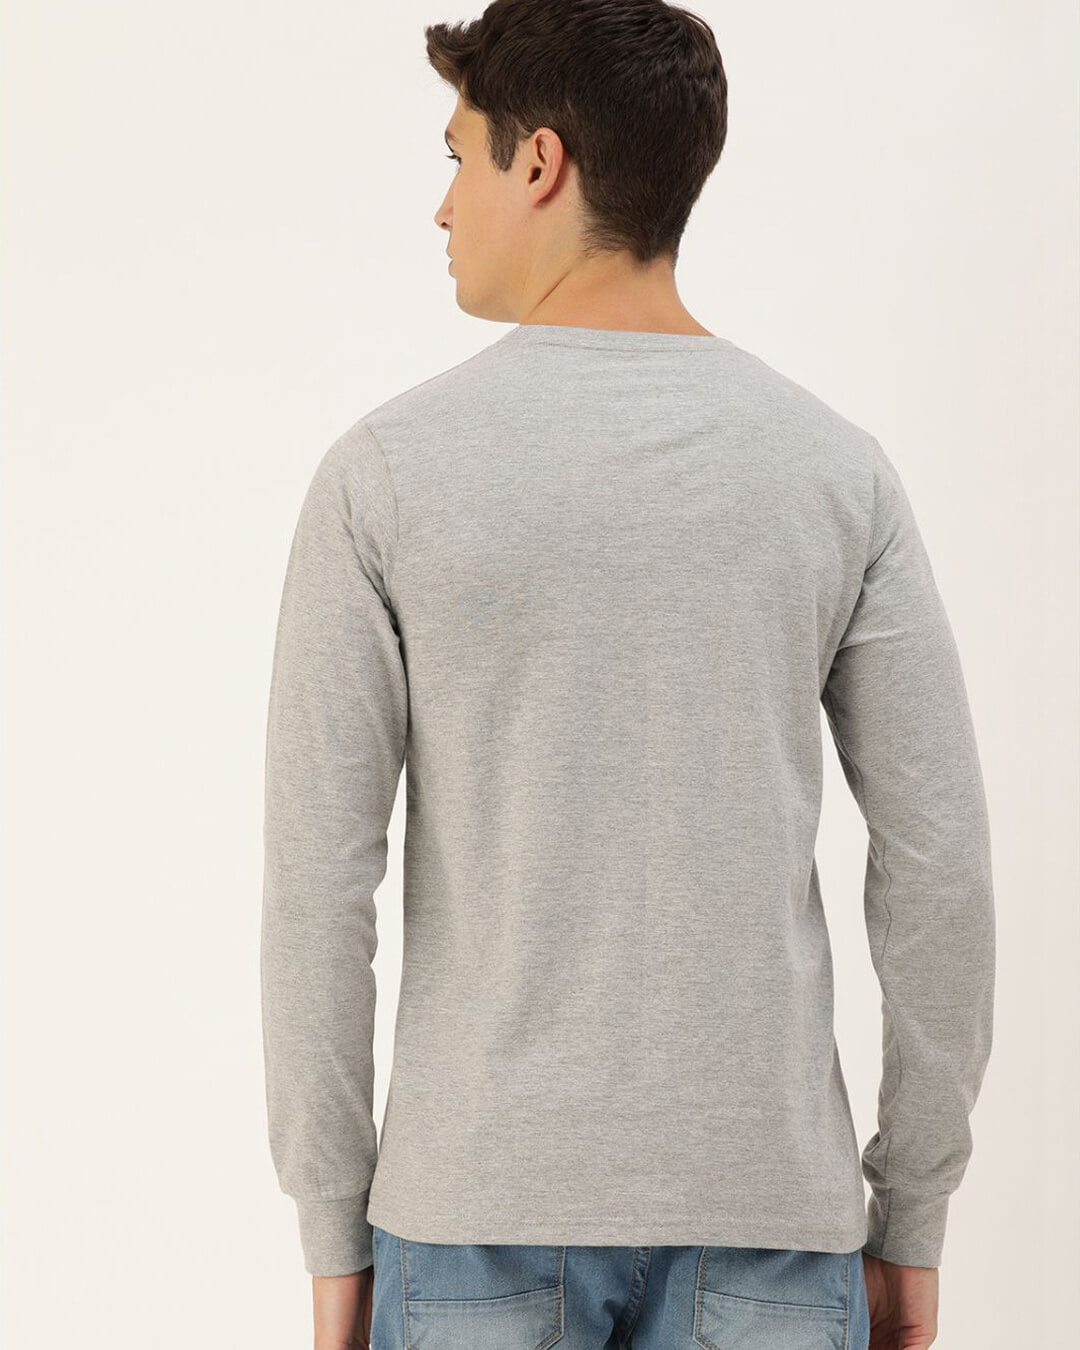 Shop Men's Grey Striped Slim Fit T-shirt-Back